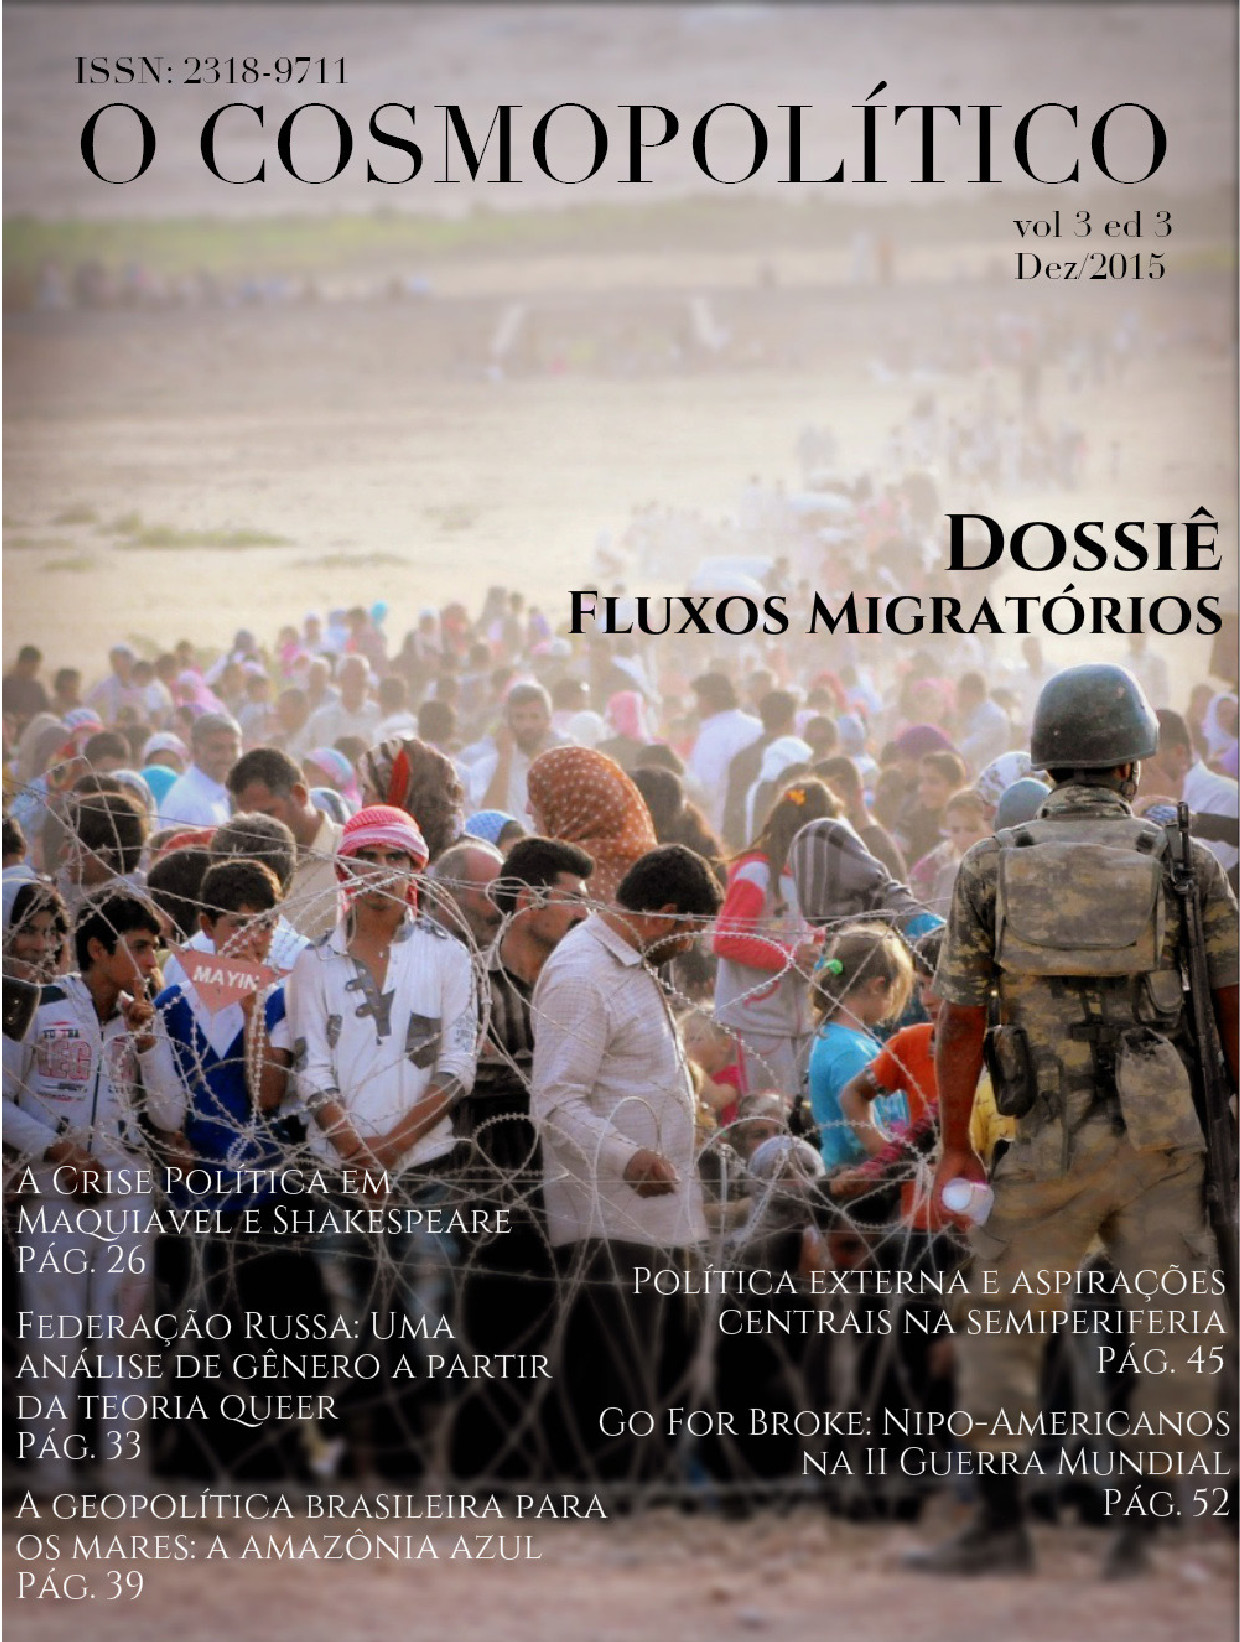 Imagem de capa: Centenas de pessoas fugitivas caminham juntas em direção a um destino.